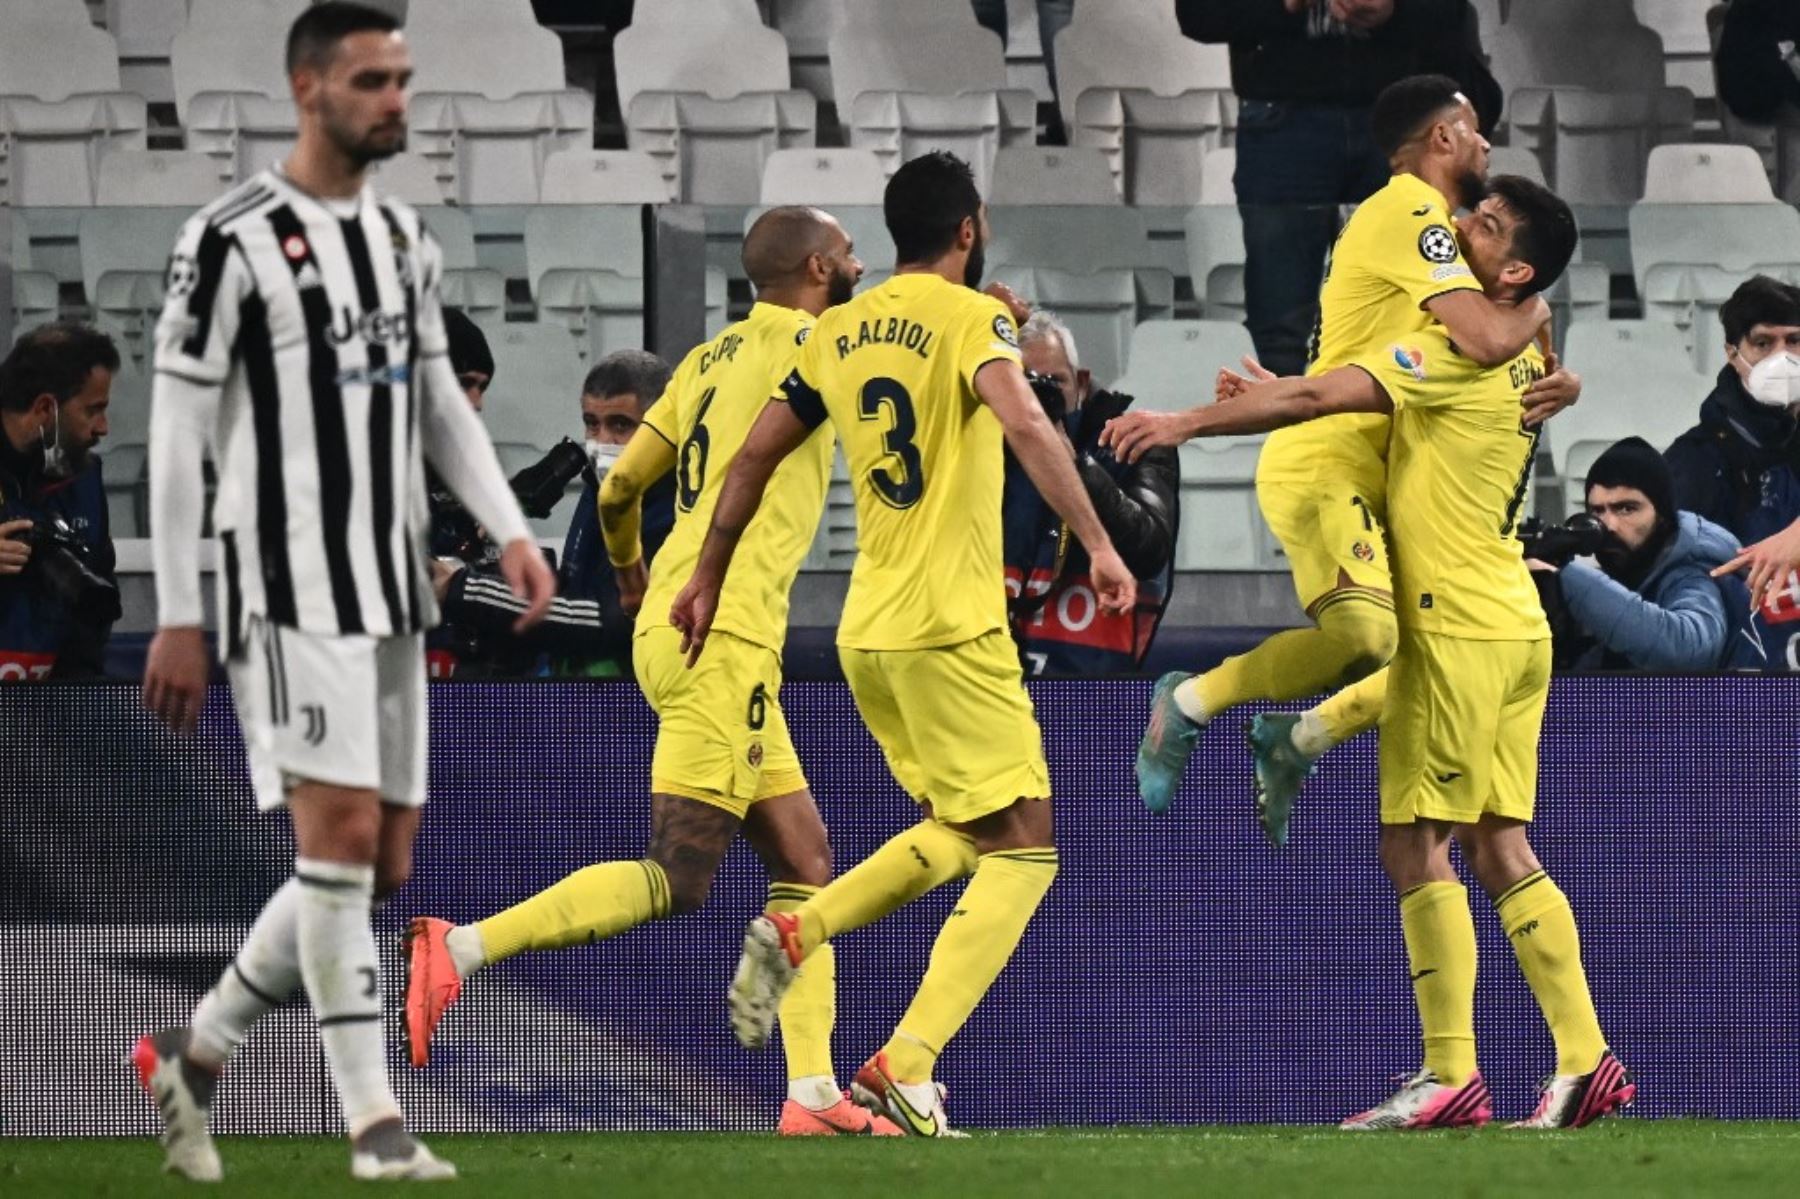 El Villarreal de España hace historia al acceder a los cuartos d e final de la Liga de Campeones al ganar a la Juventus en Turín